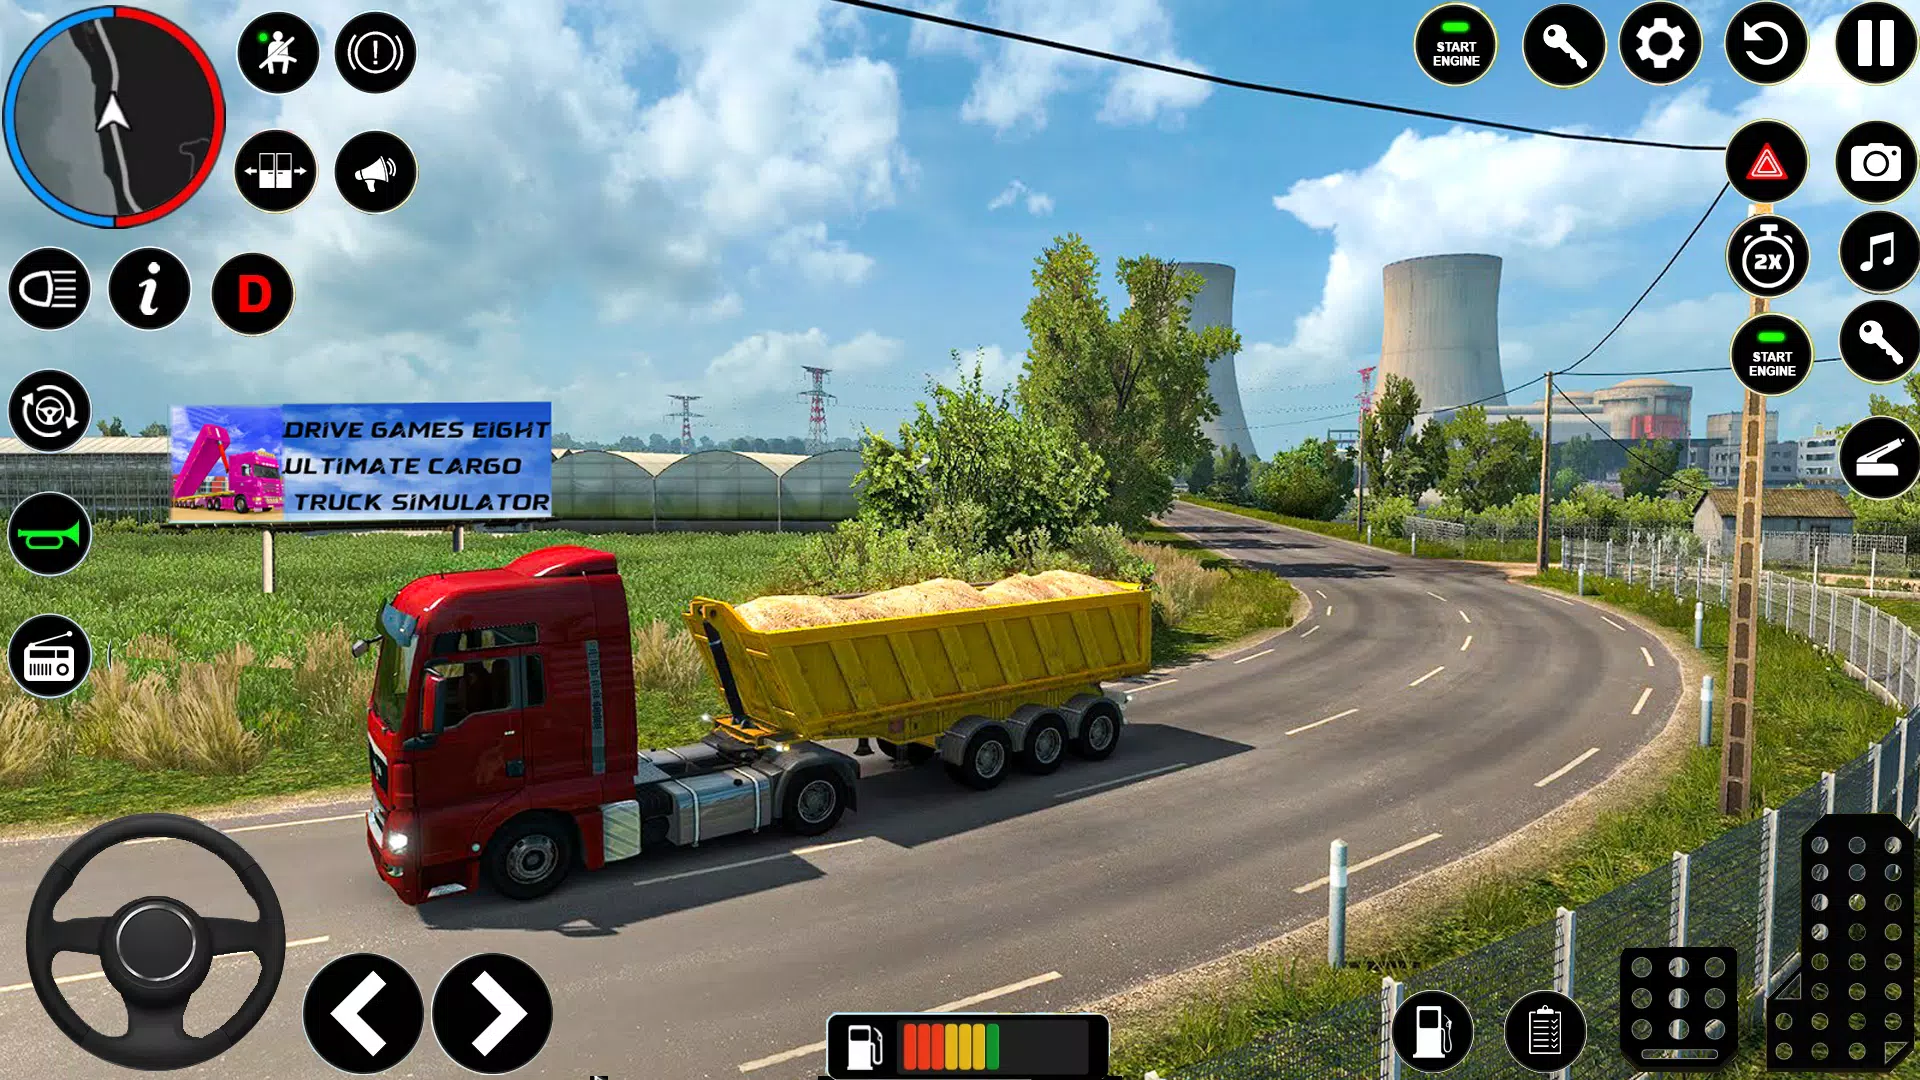 Simulador de Caminhões Brasileiro APK 2.0 for Android – Download